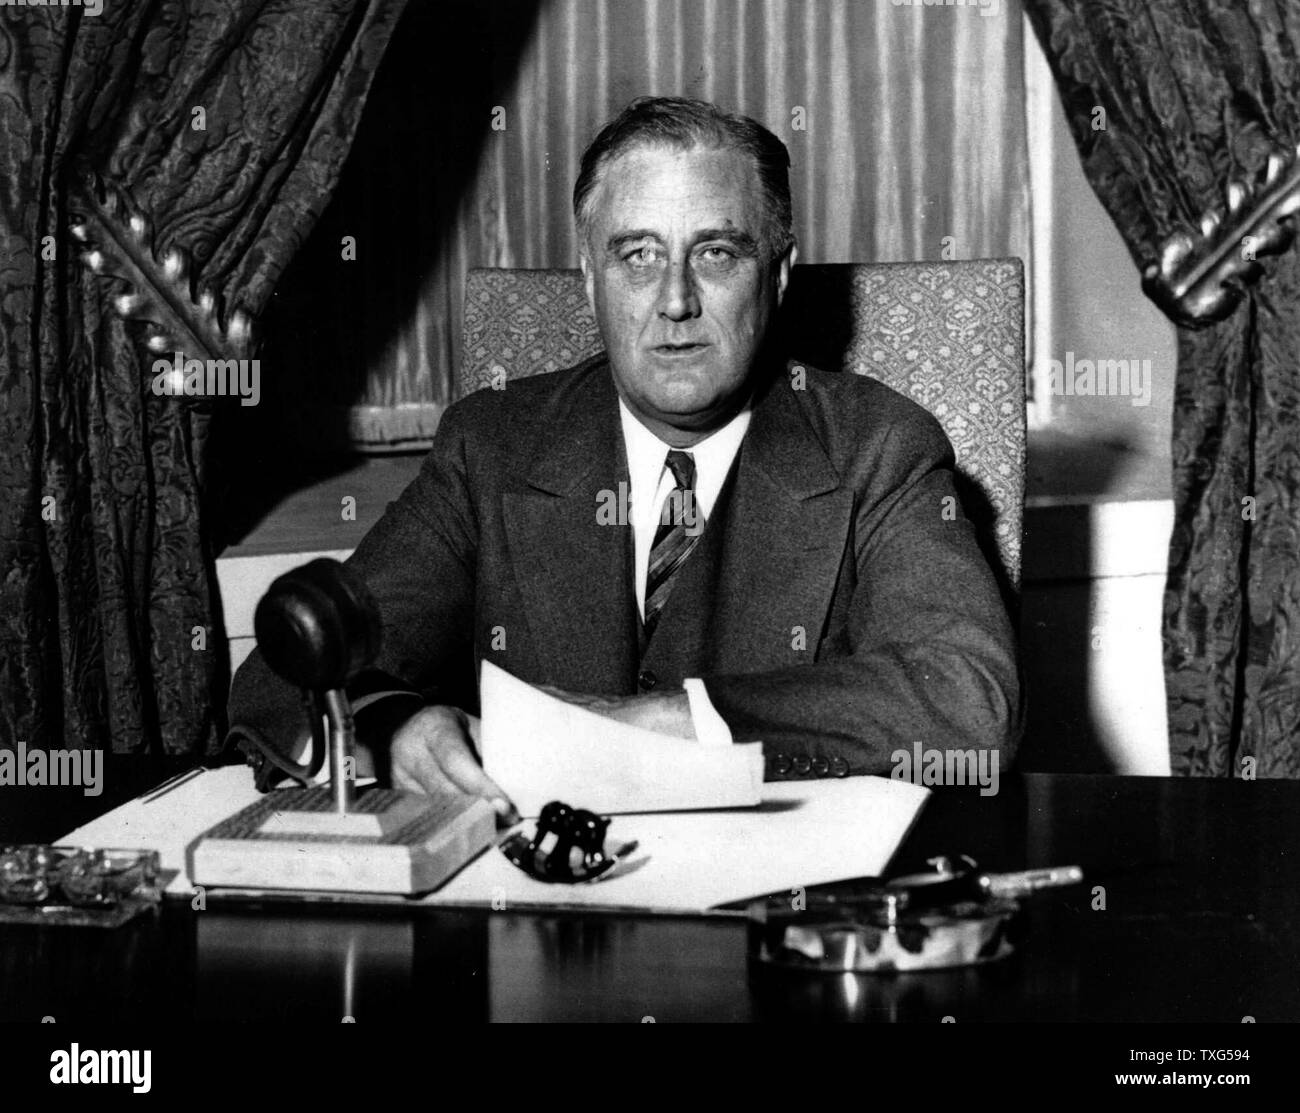 Franklin Delano Roosevelt (1882-1945), il trentaduesimo Presidente degli Stati Uniti d'America (1933-1945), dando uno dei suoi "fireside' trasmissioni alla nazione americana Foto Stock